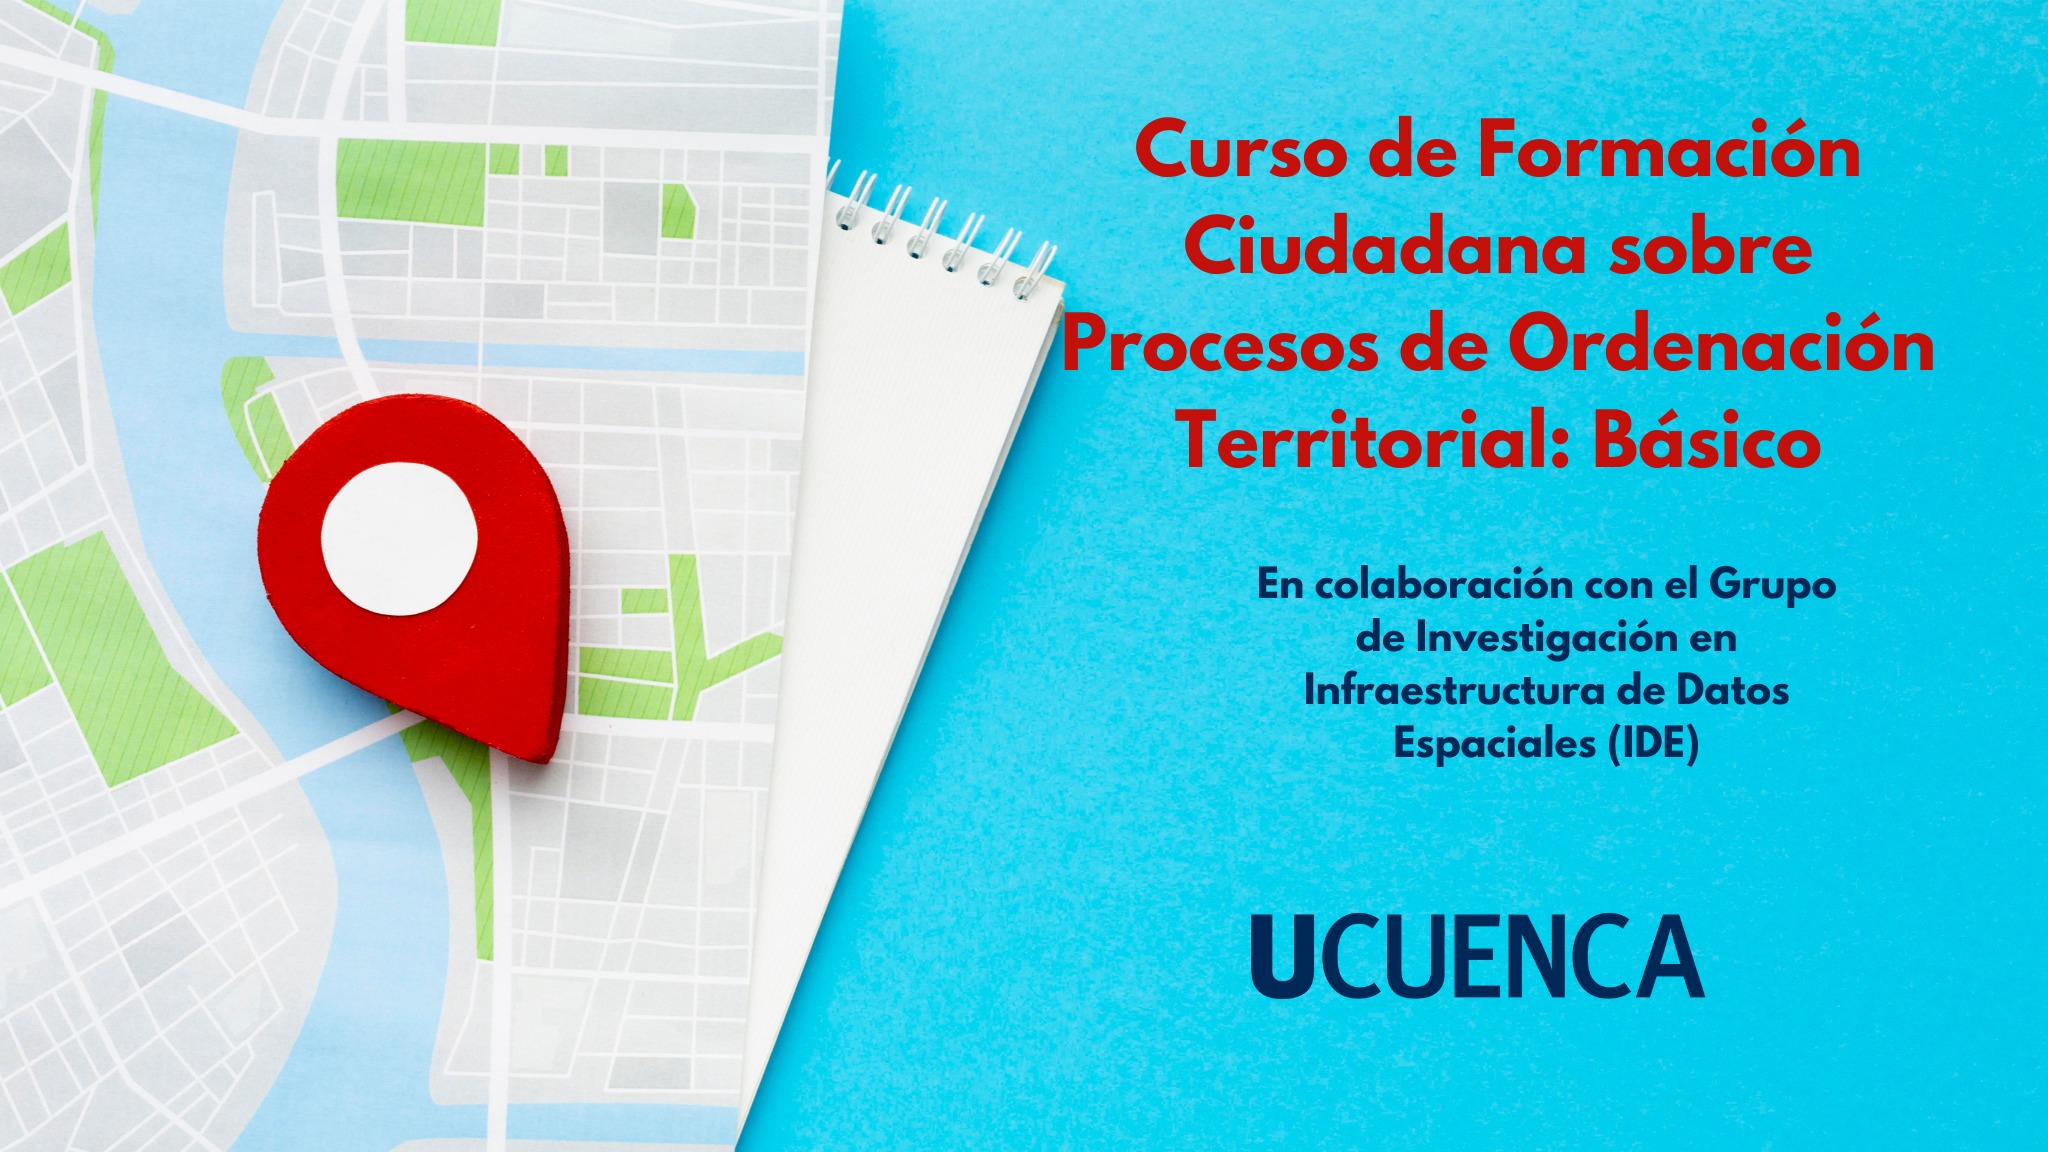 Curso de formación ciudadana sobre Procesos de Ordenación Territorial: Básico UC-BD-001